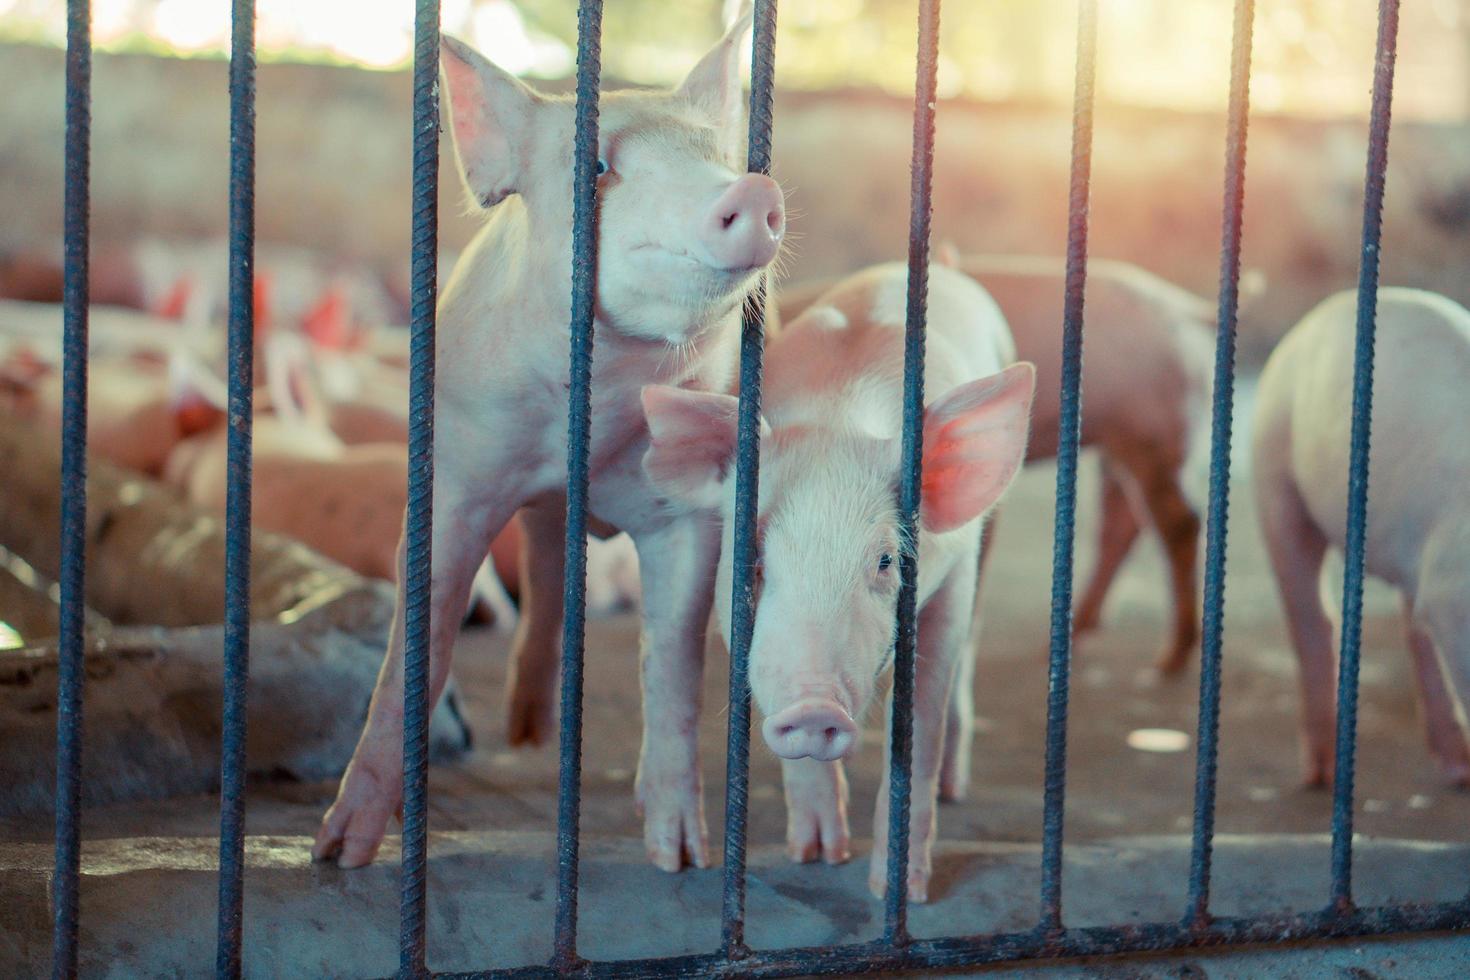 groupe de porc qui a l'air en bonne santé dans la ferme porcine locale de l'asean à l'élevage. le concept d'élevage standardisé et propre sans maladies ou conditions locales qui affectent la croissance ou la fécondité des porcelets photo